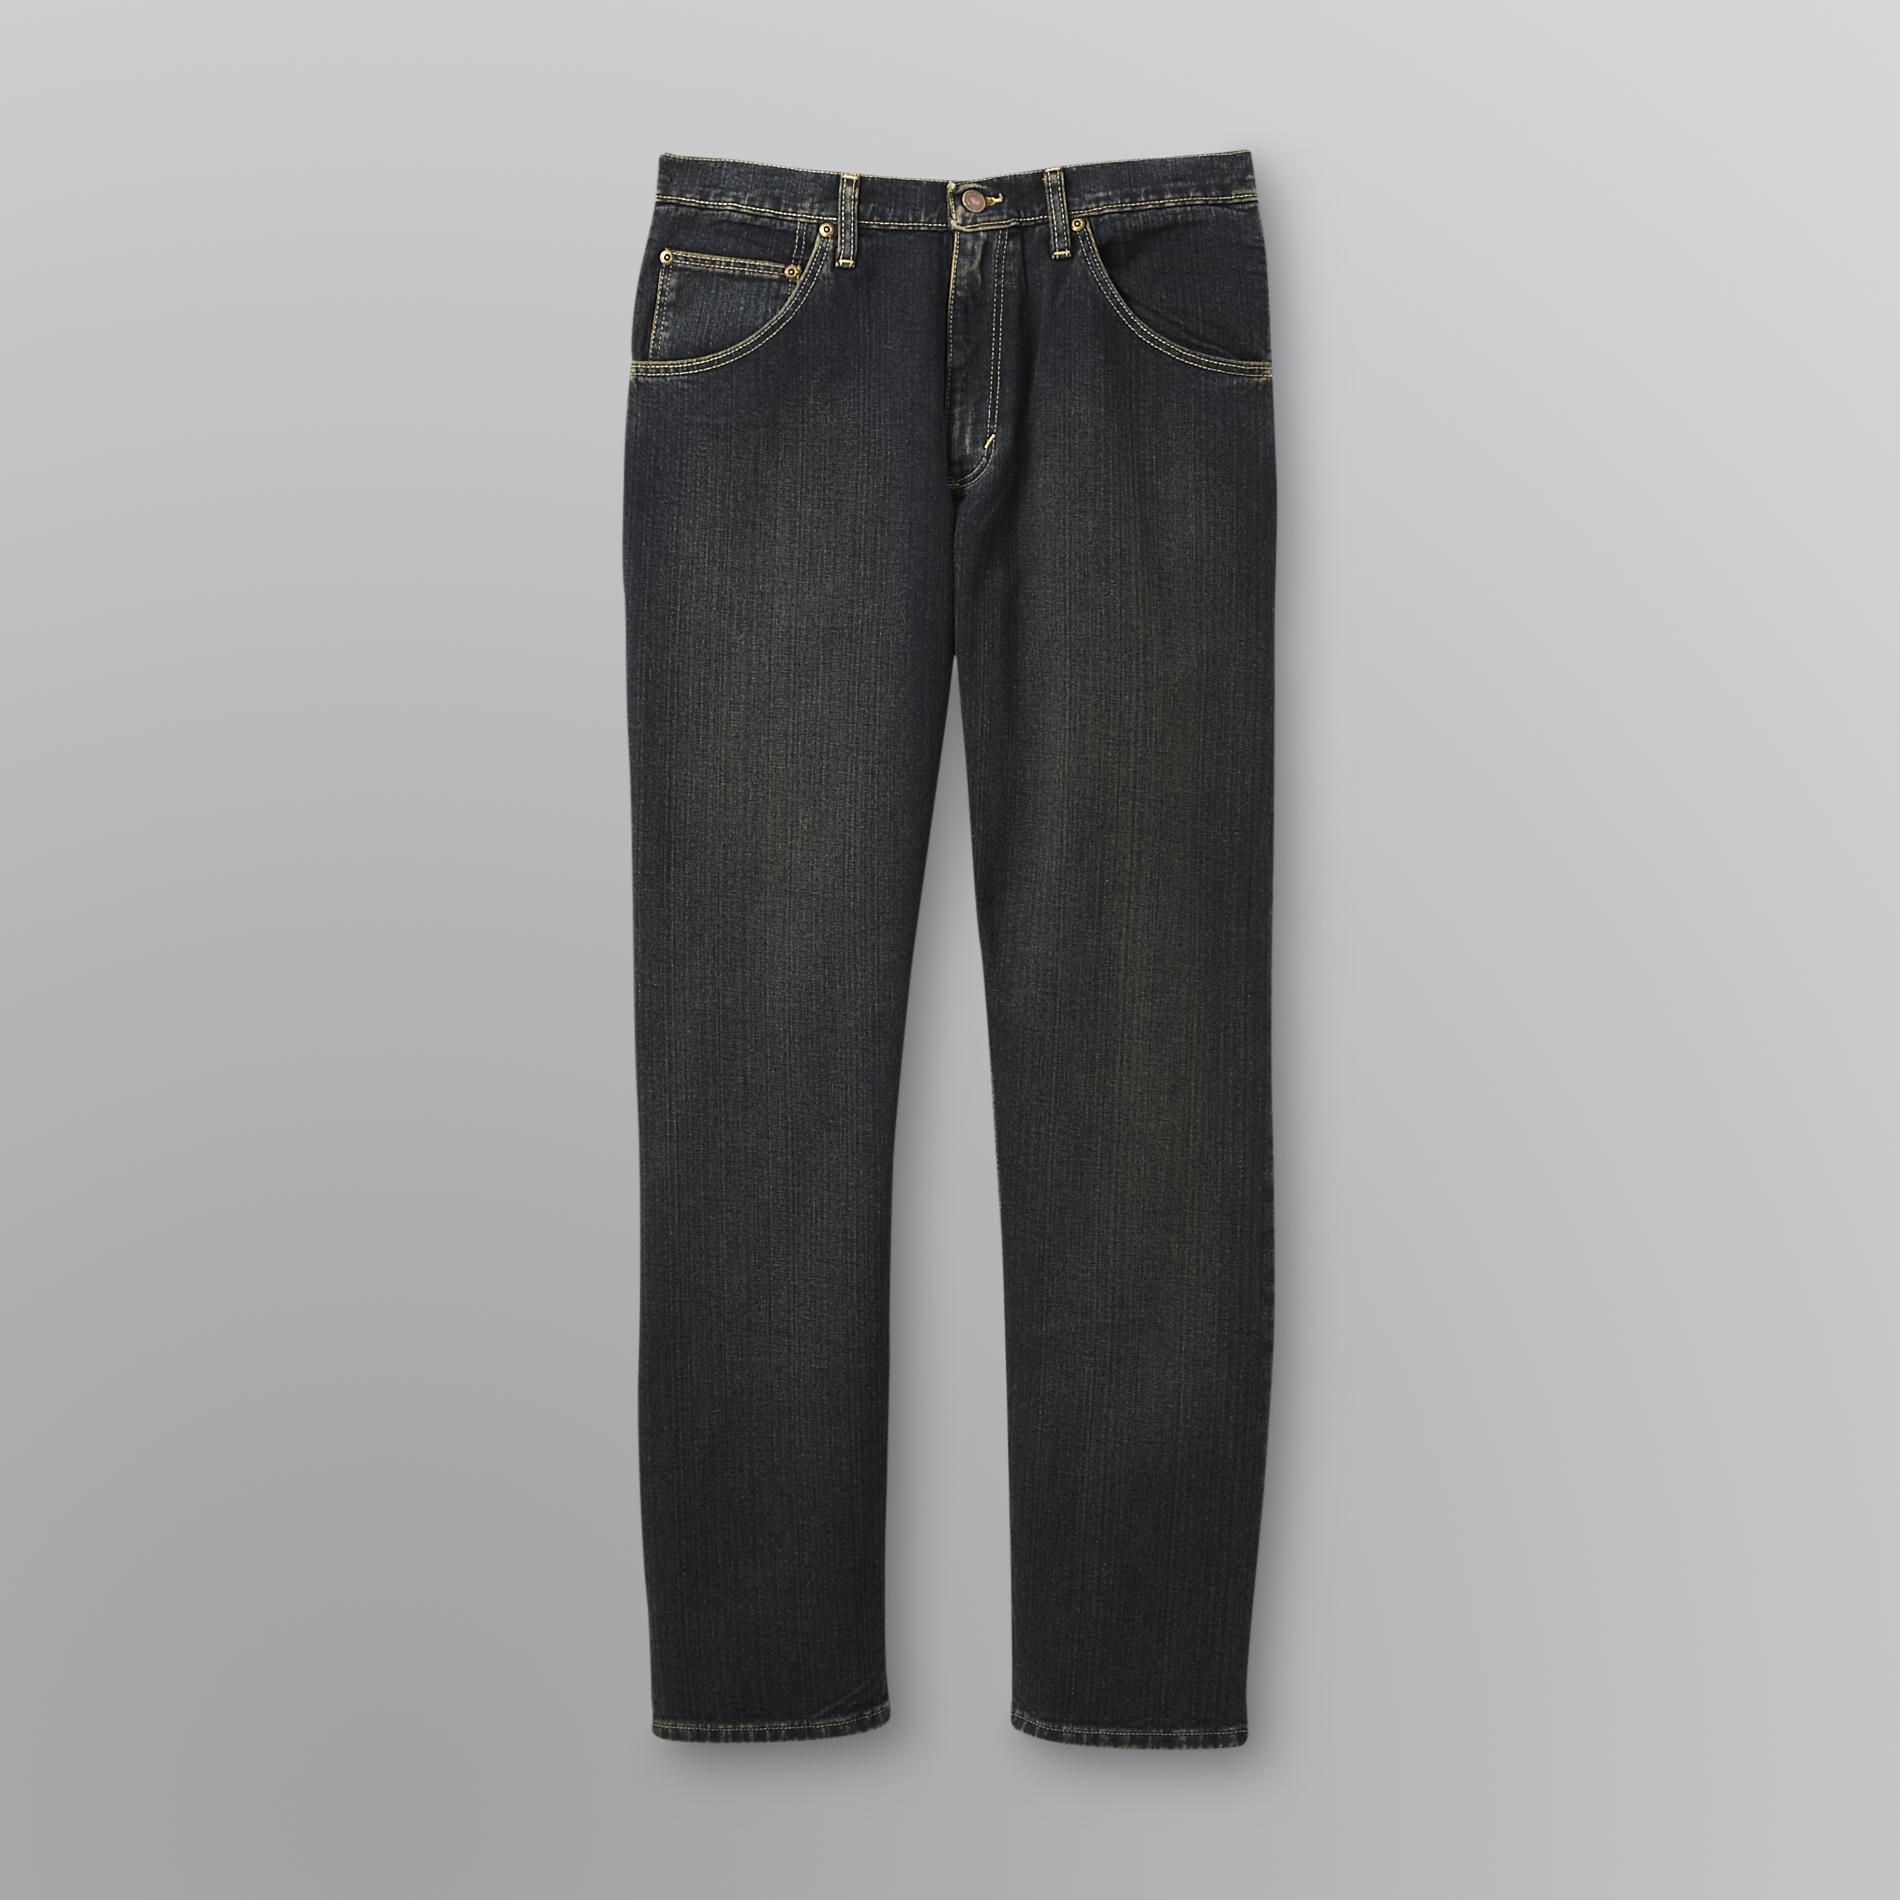 Men's Premium Denim Jeans - Regular Fit